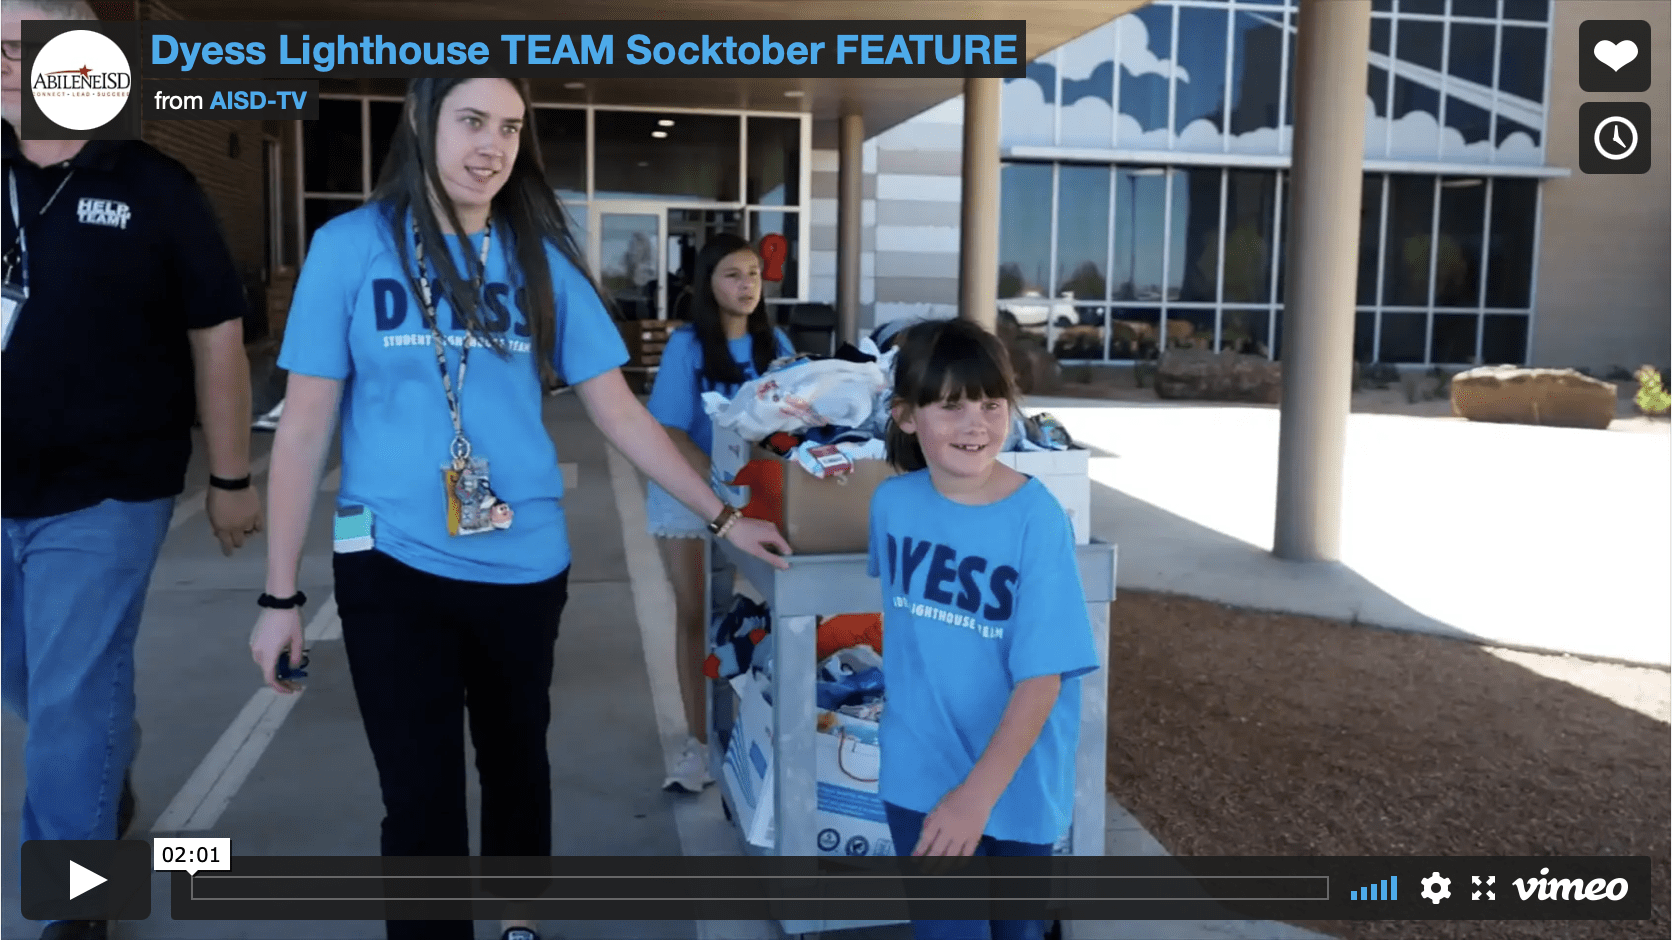 dyess-lighthouse-team-socktober-feature